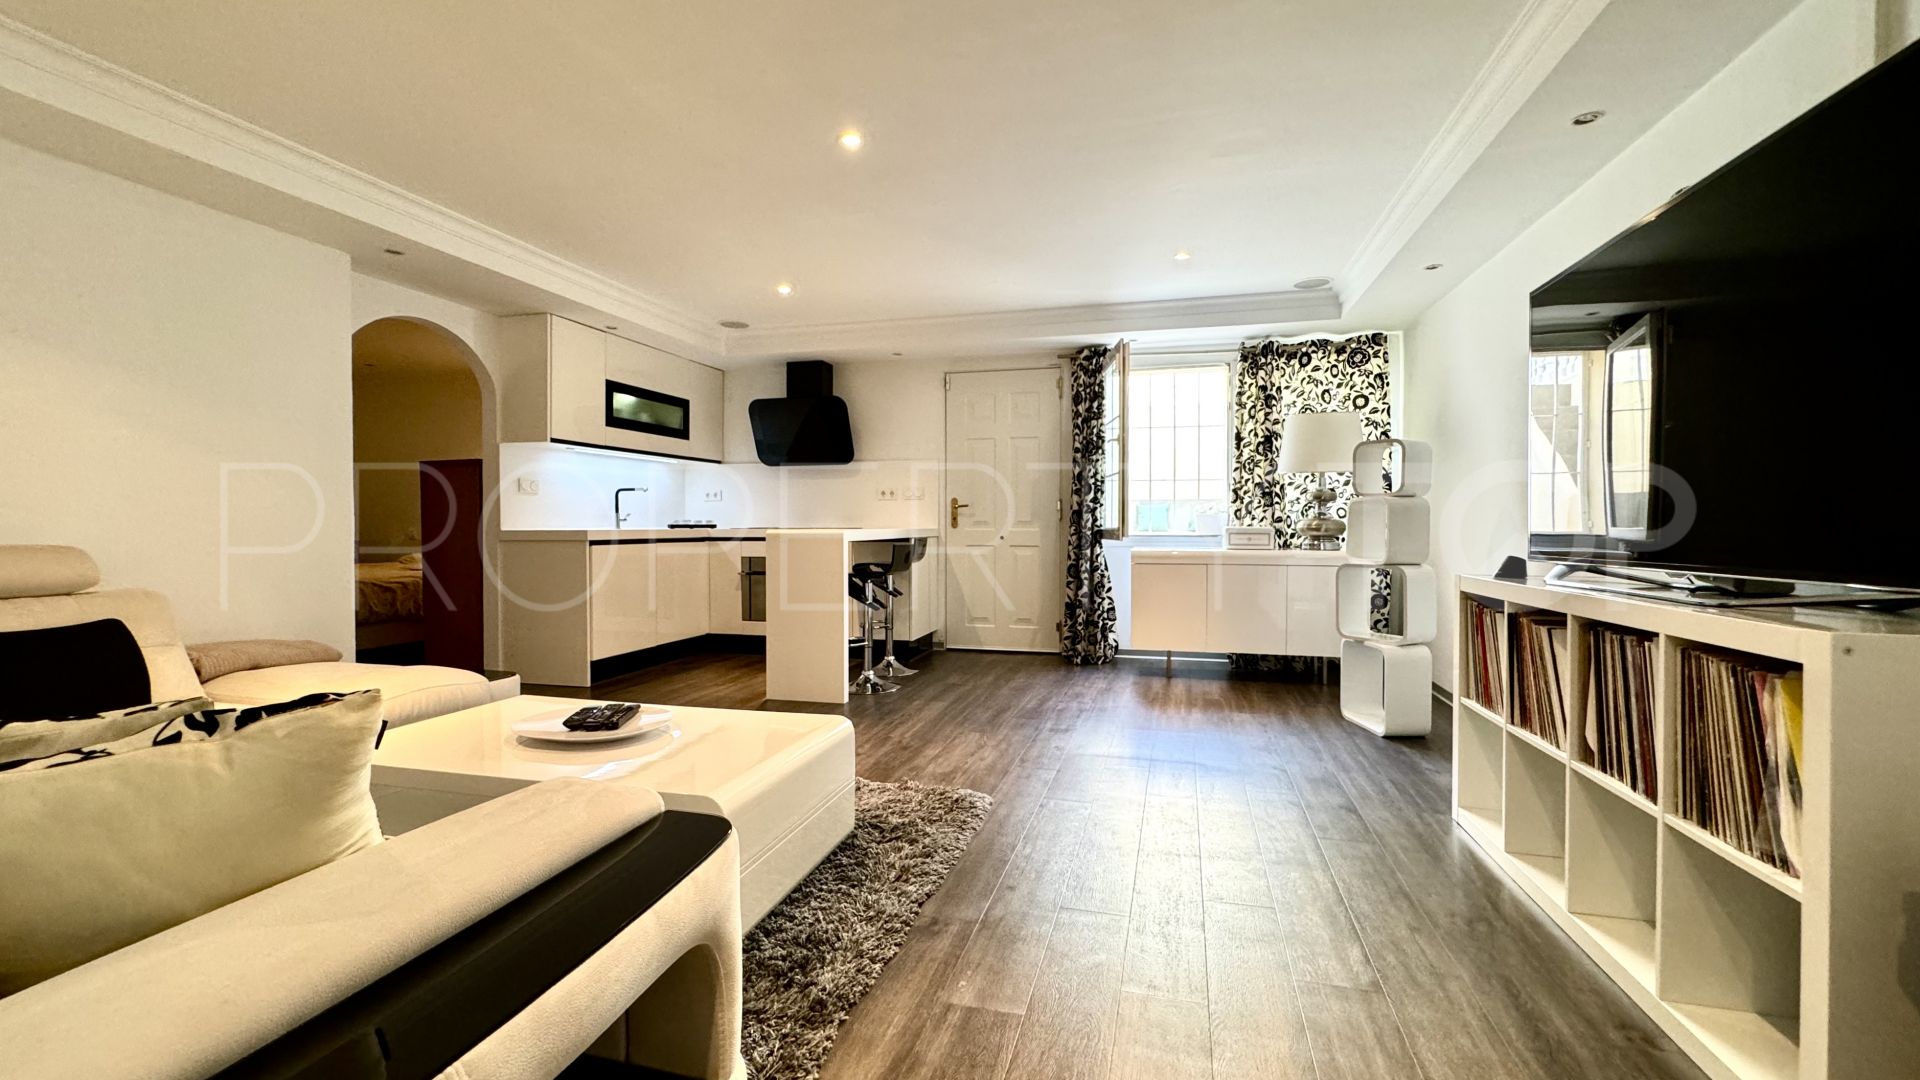 5 bedrooms villa in Riviera del Sol for sale